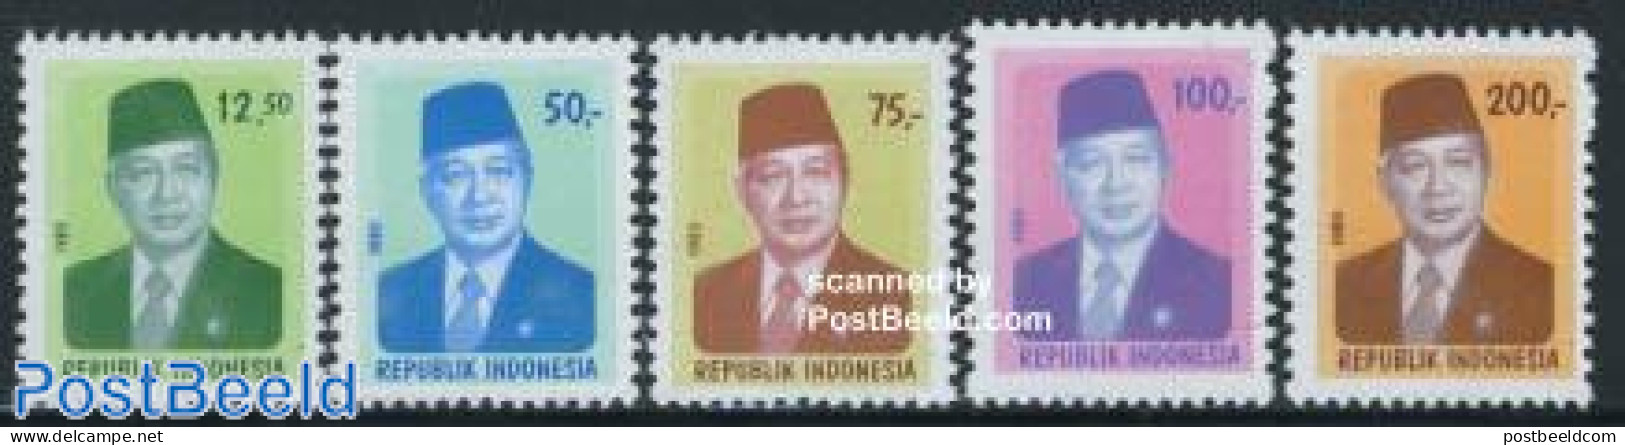 Indonesia 1980 Definitives 5v, Mint NH - Indonesien